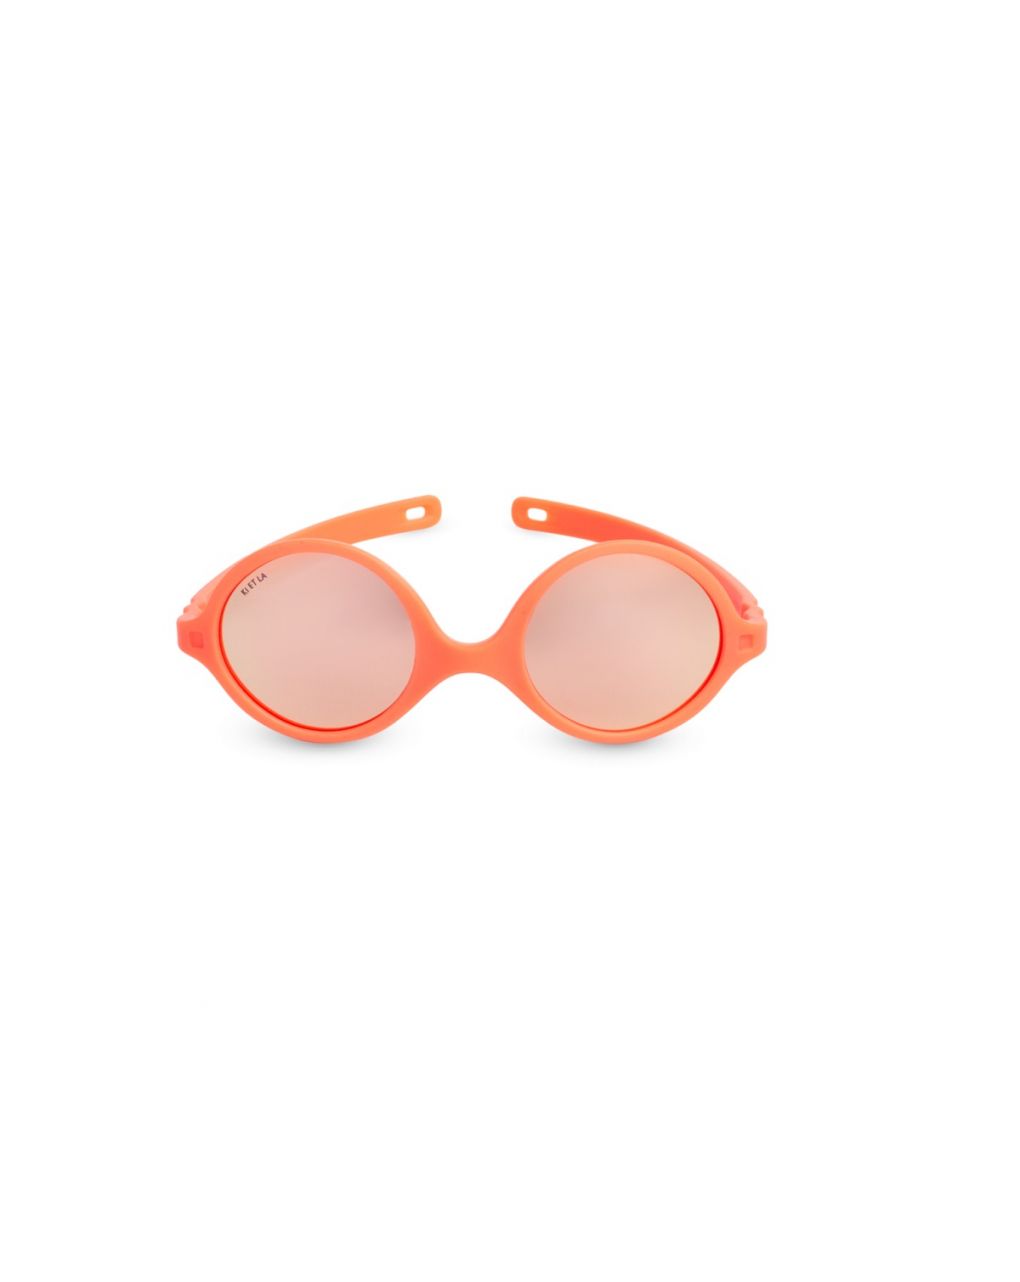 Kietla γυαλιά ηλίου 0-1 ετών diabola fluo orange - kietla